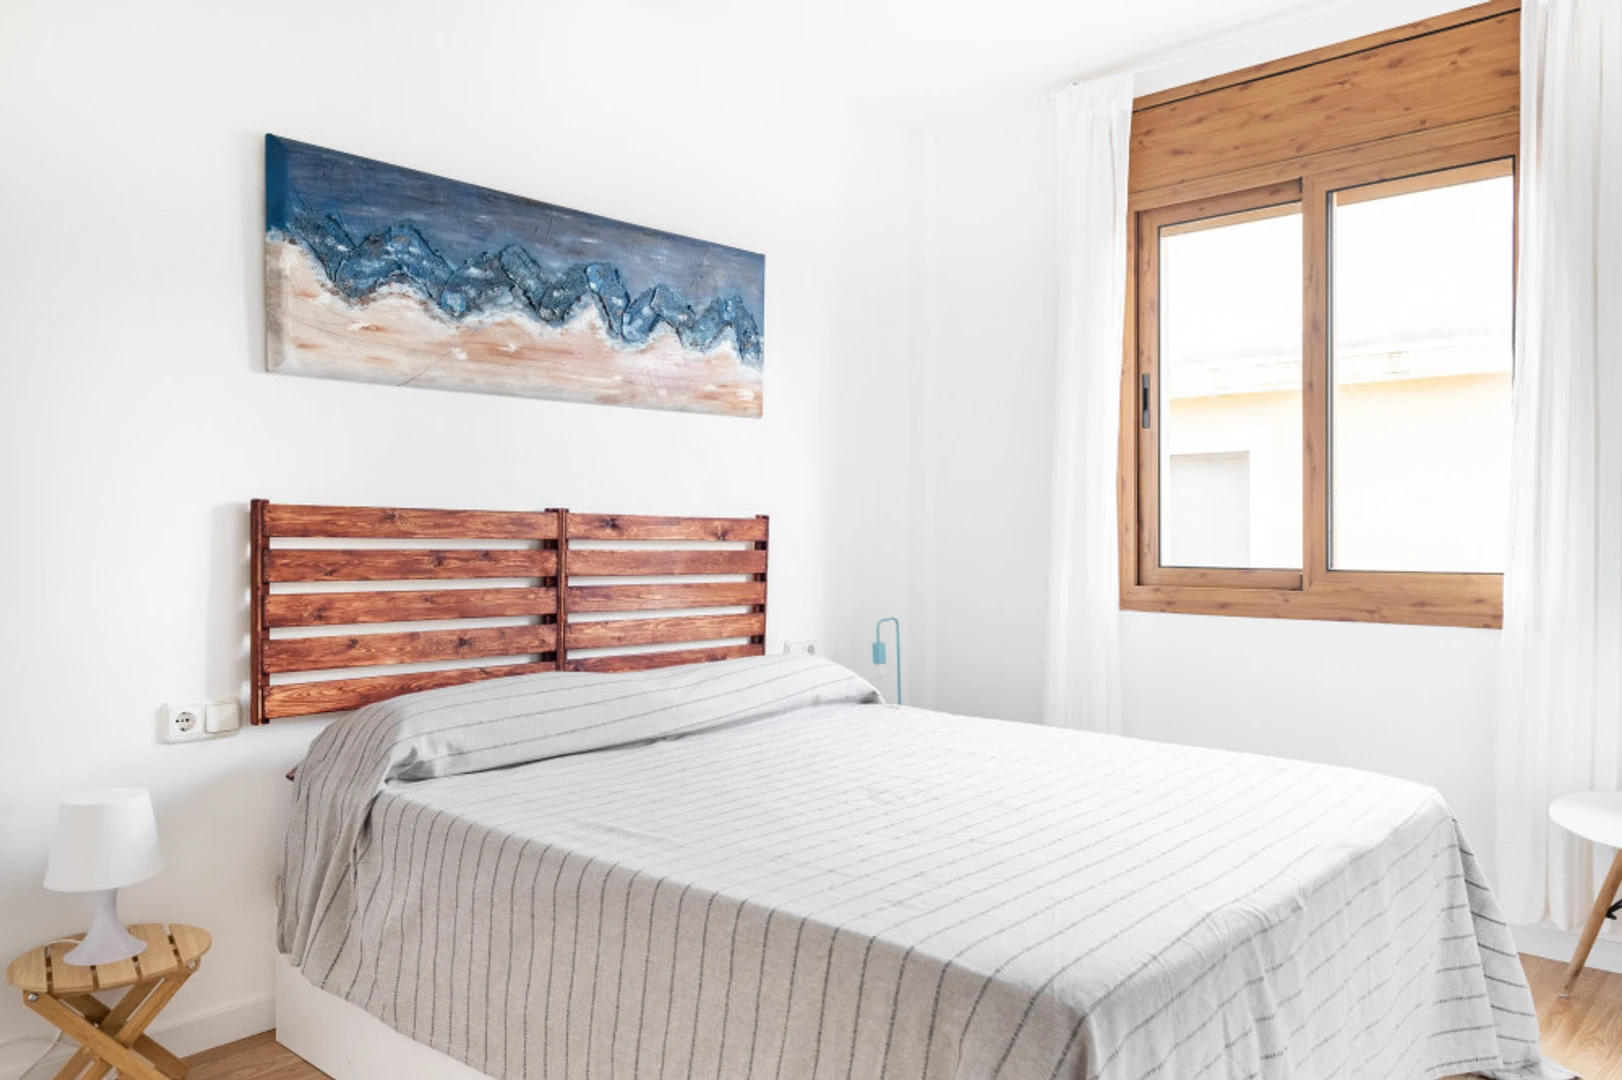 Entire fully furnished flat in Tarragona